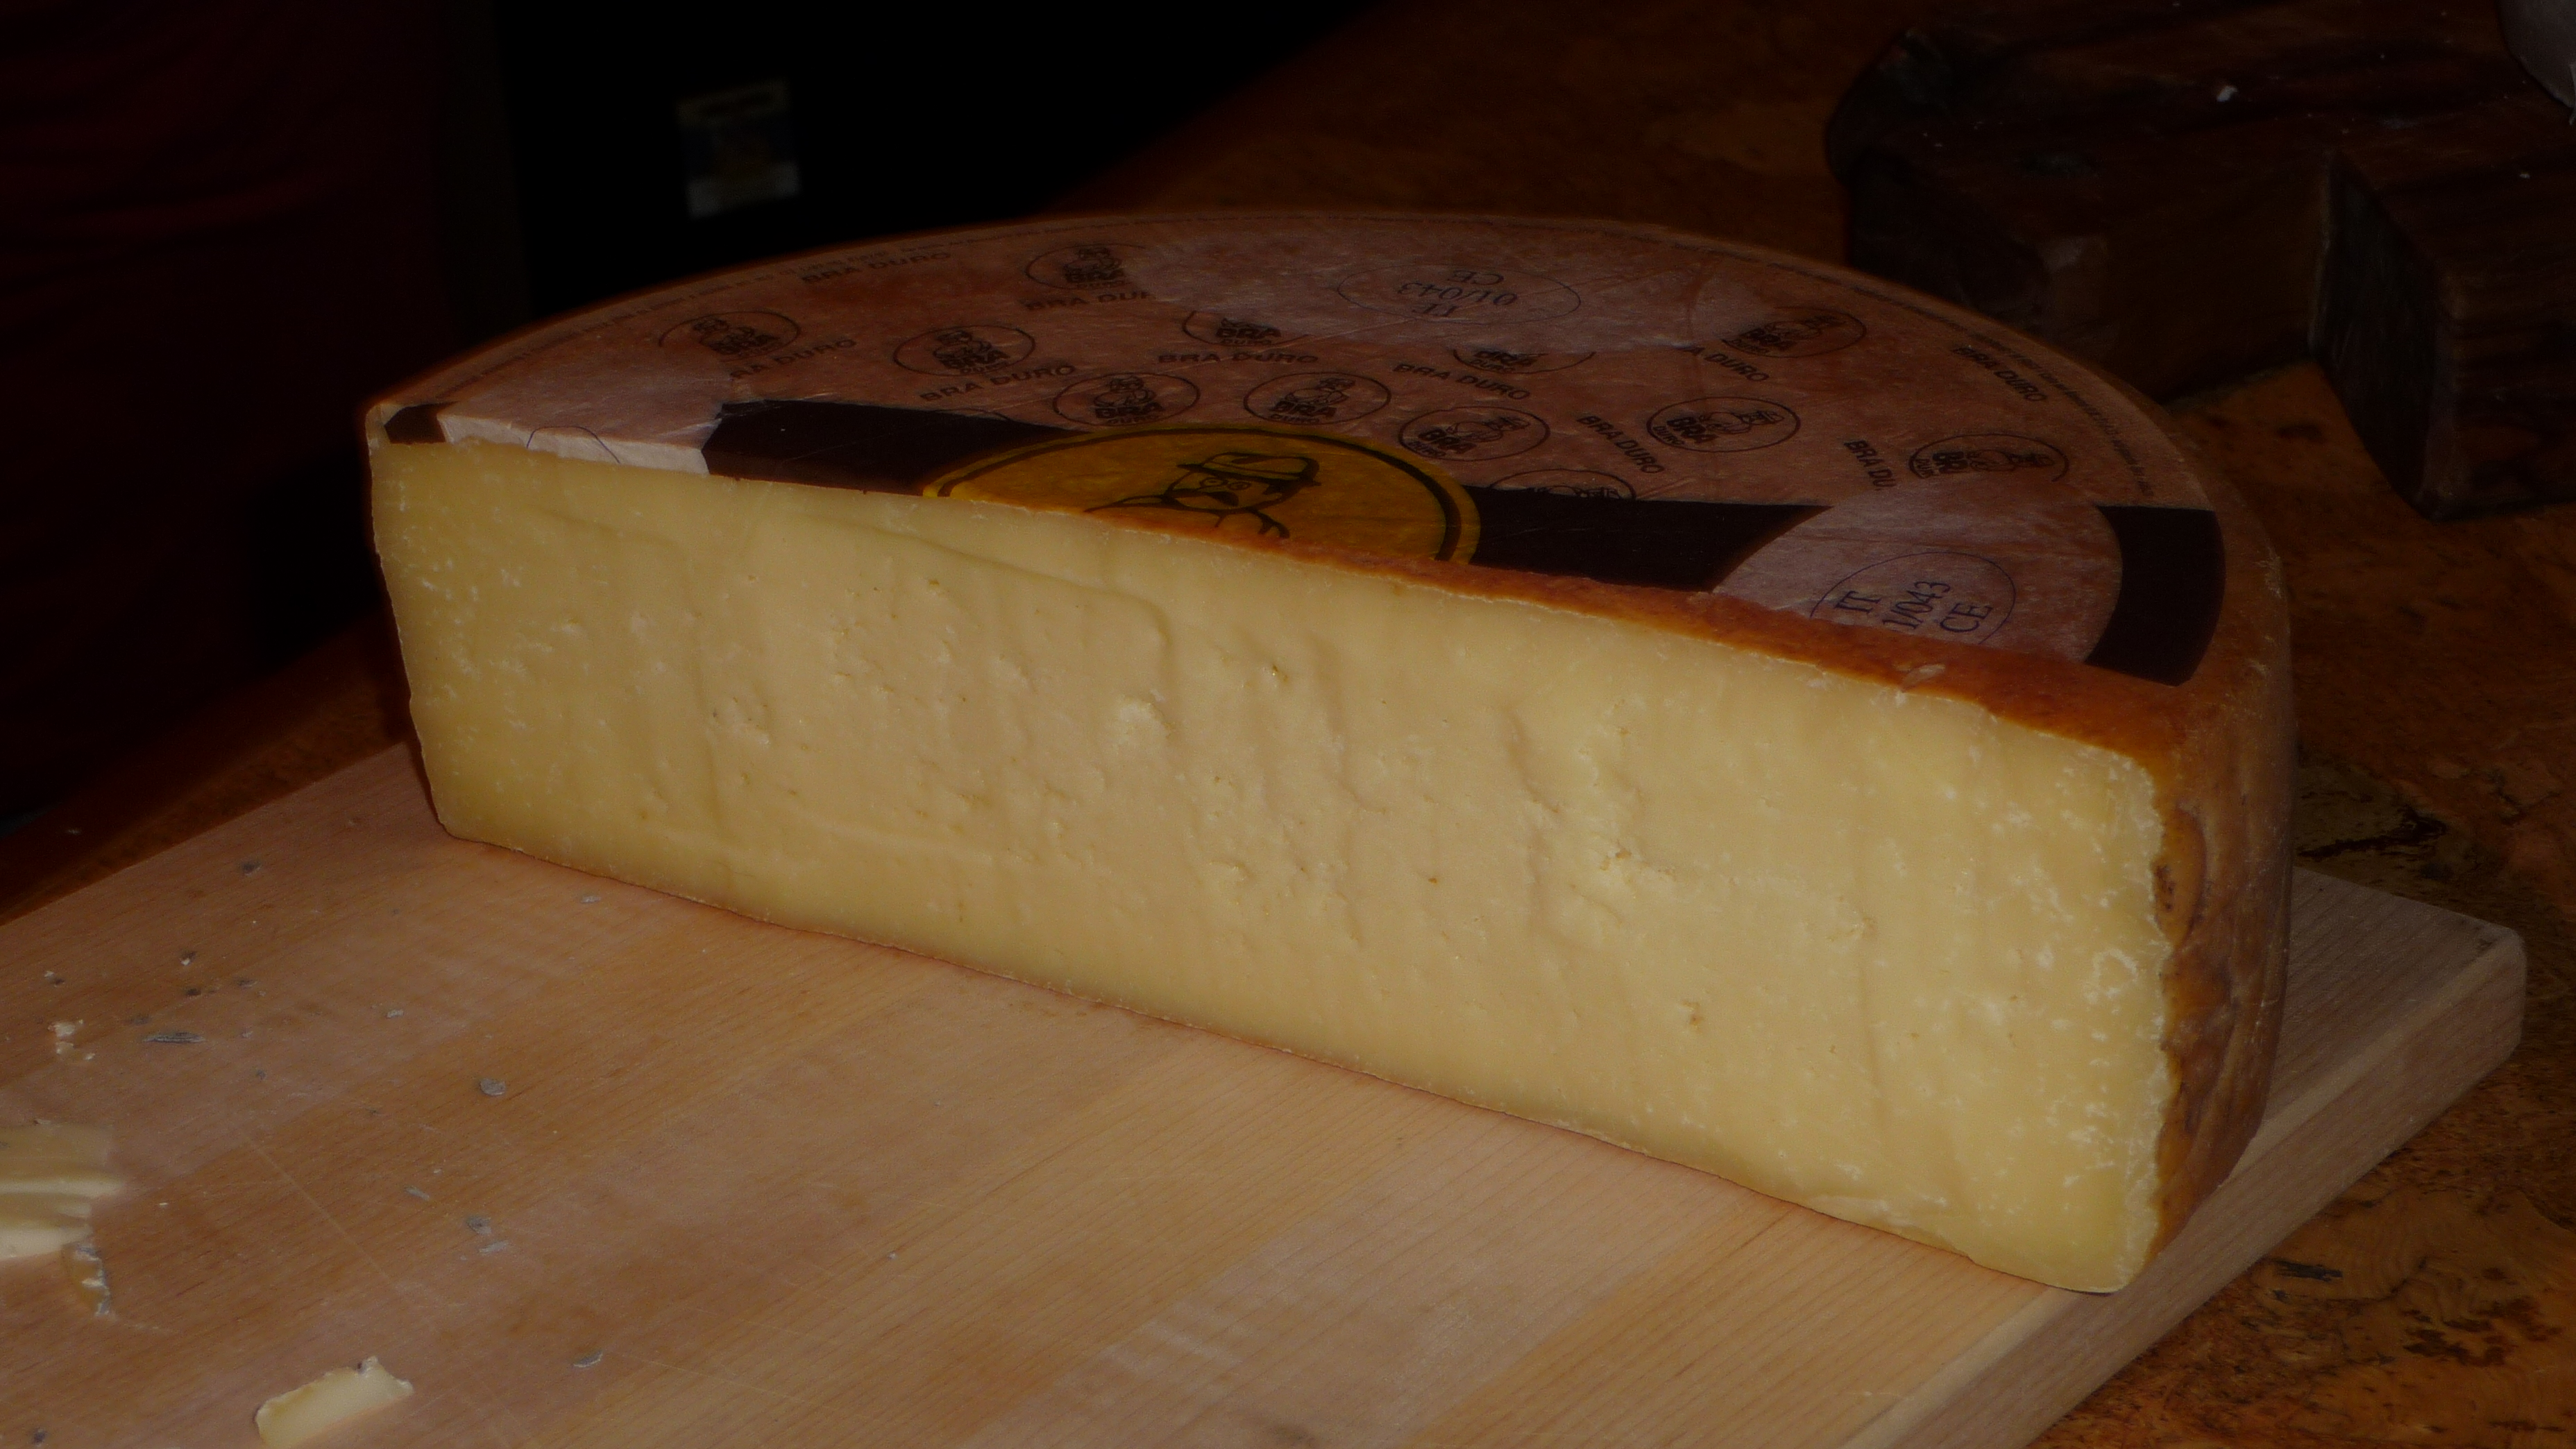 https://upload.wikimedia.org/wikipedia/commons/f/f9/Bra_Duro_cheese.jpg